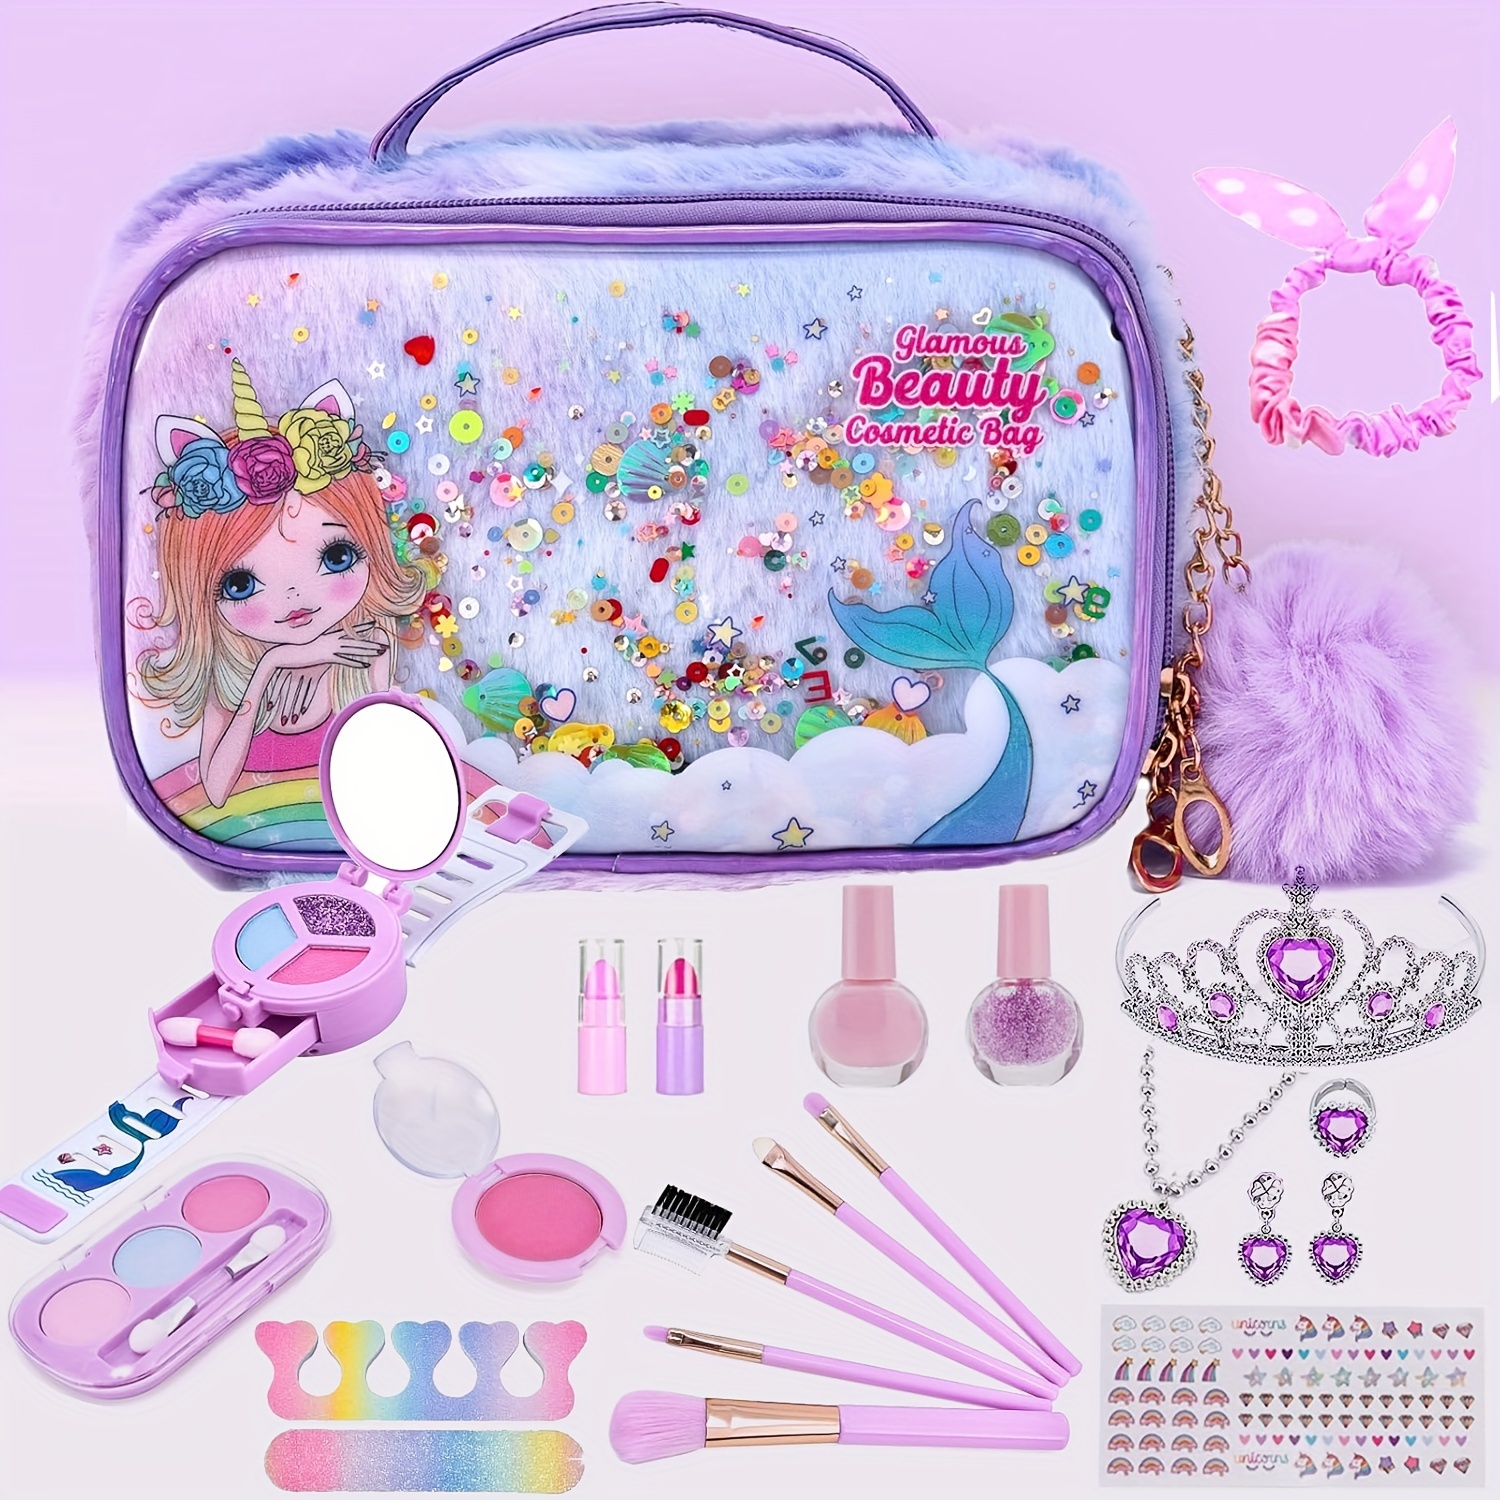  Kit de maquillaje infantil de 54 piezas para niñas, juego de  cosméticos lavables de princesa, juguetes con espejo, no tóxico y seguro,  regalos de cumpleaños para niñas de 3, 4, 5